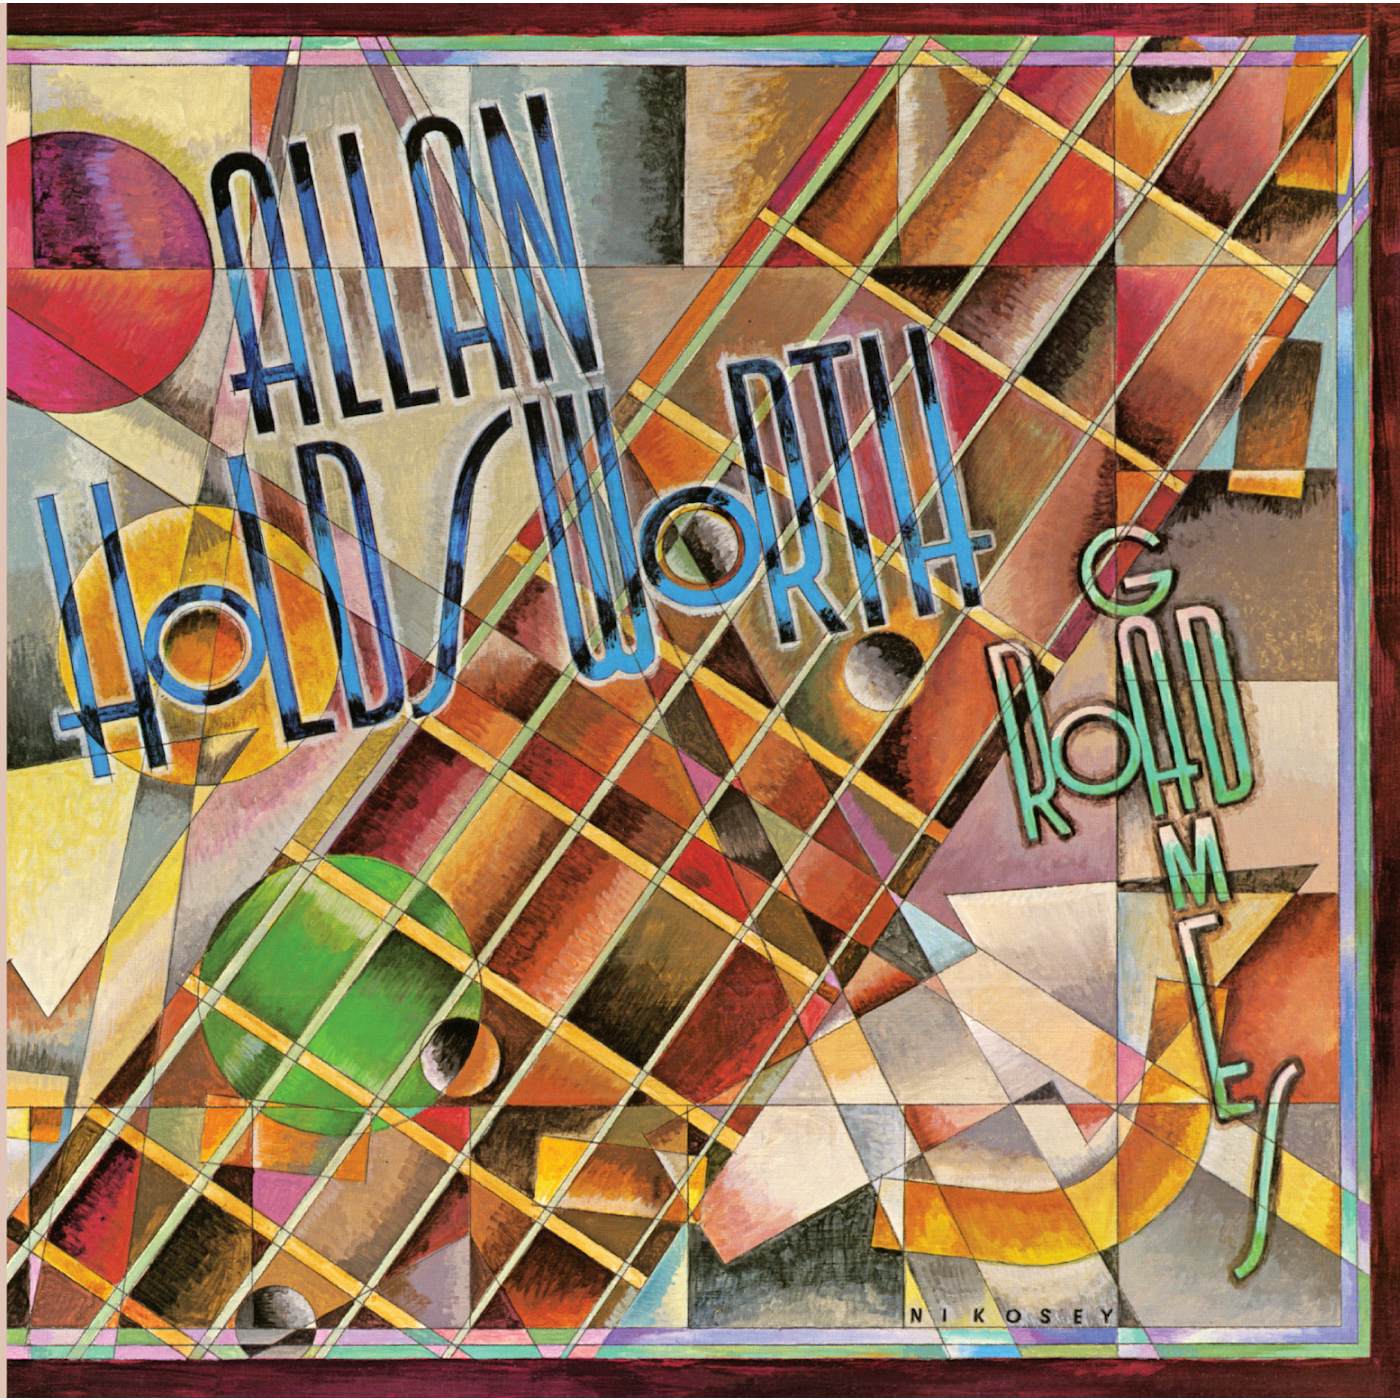 Allan Holdsworth ROAD GAMES CD